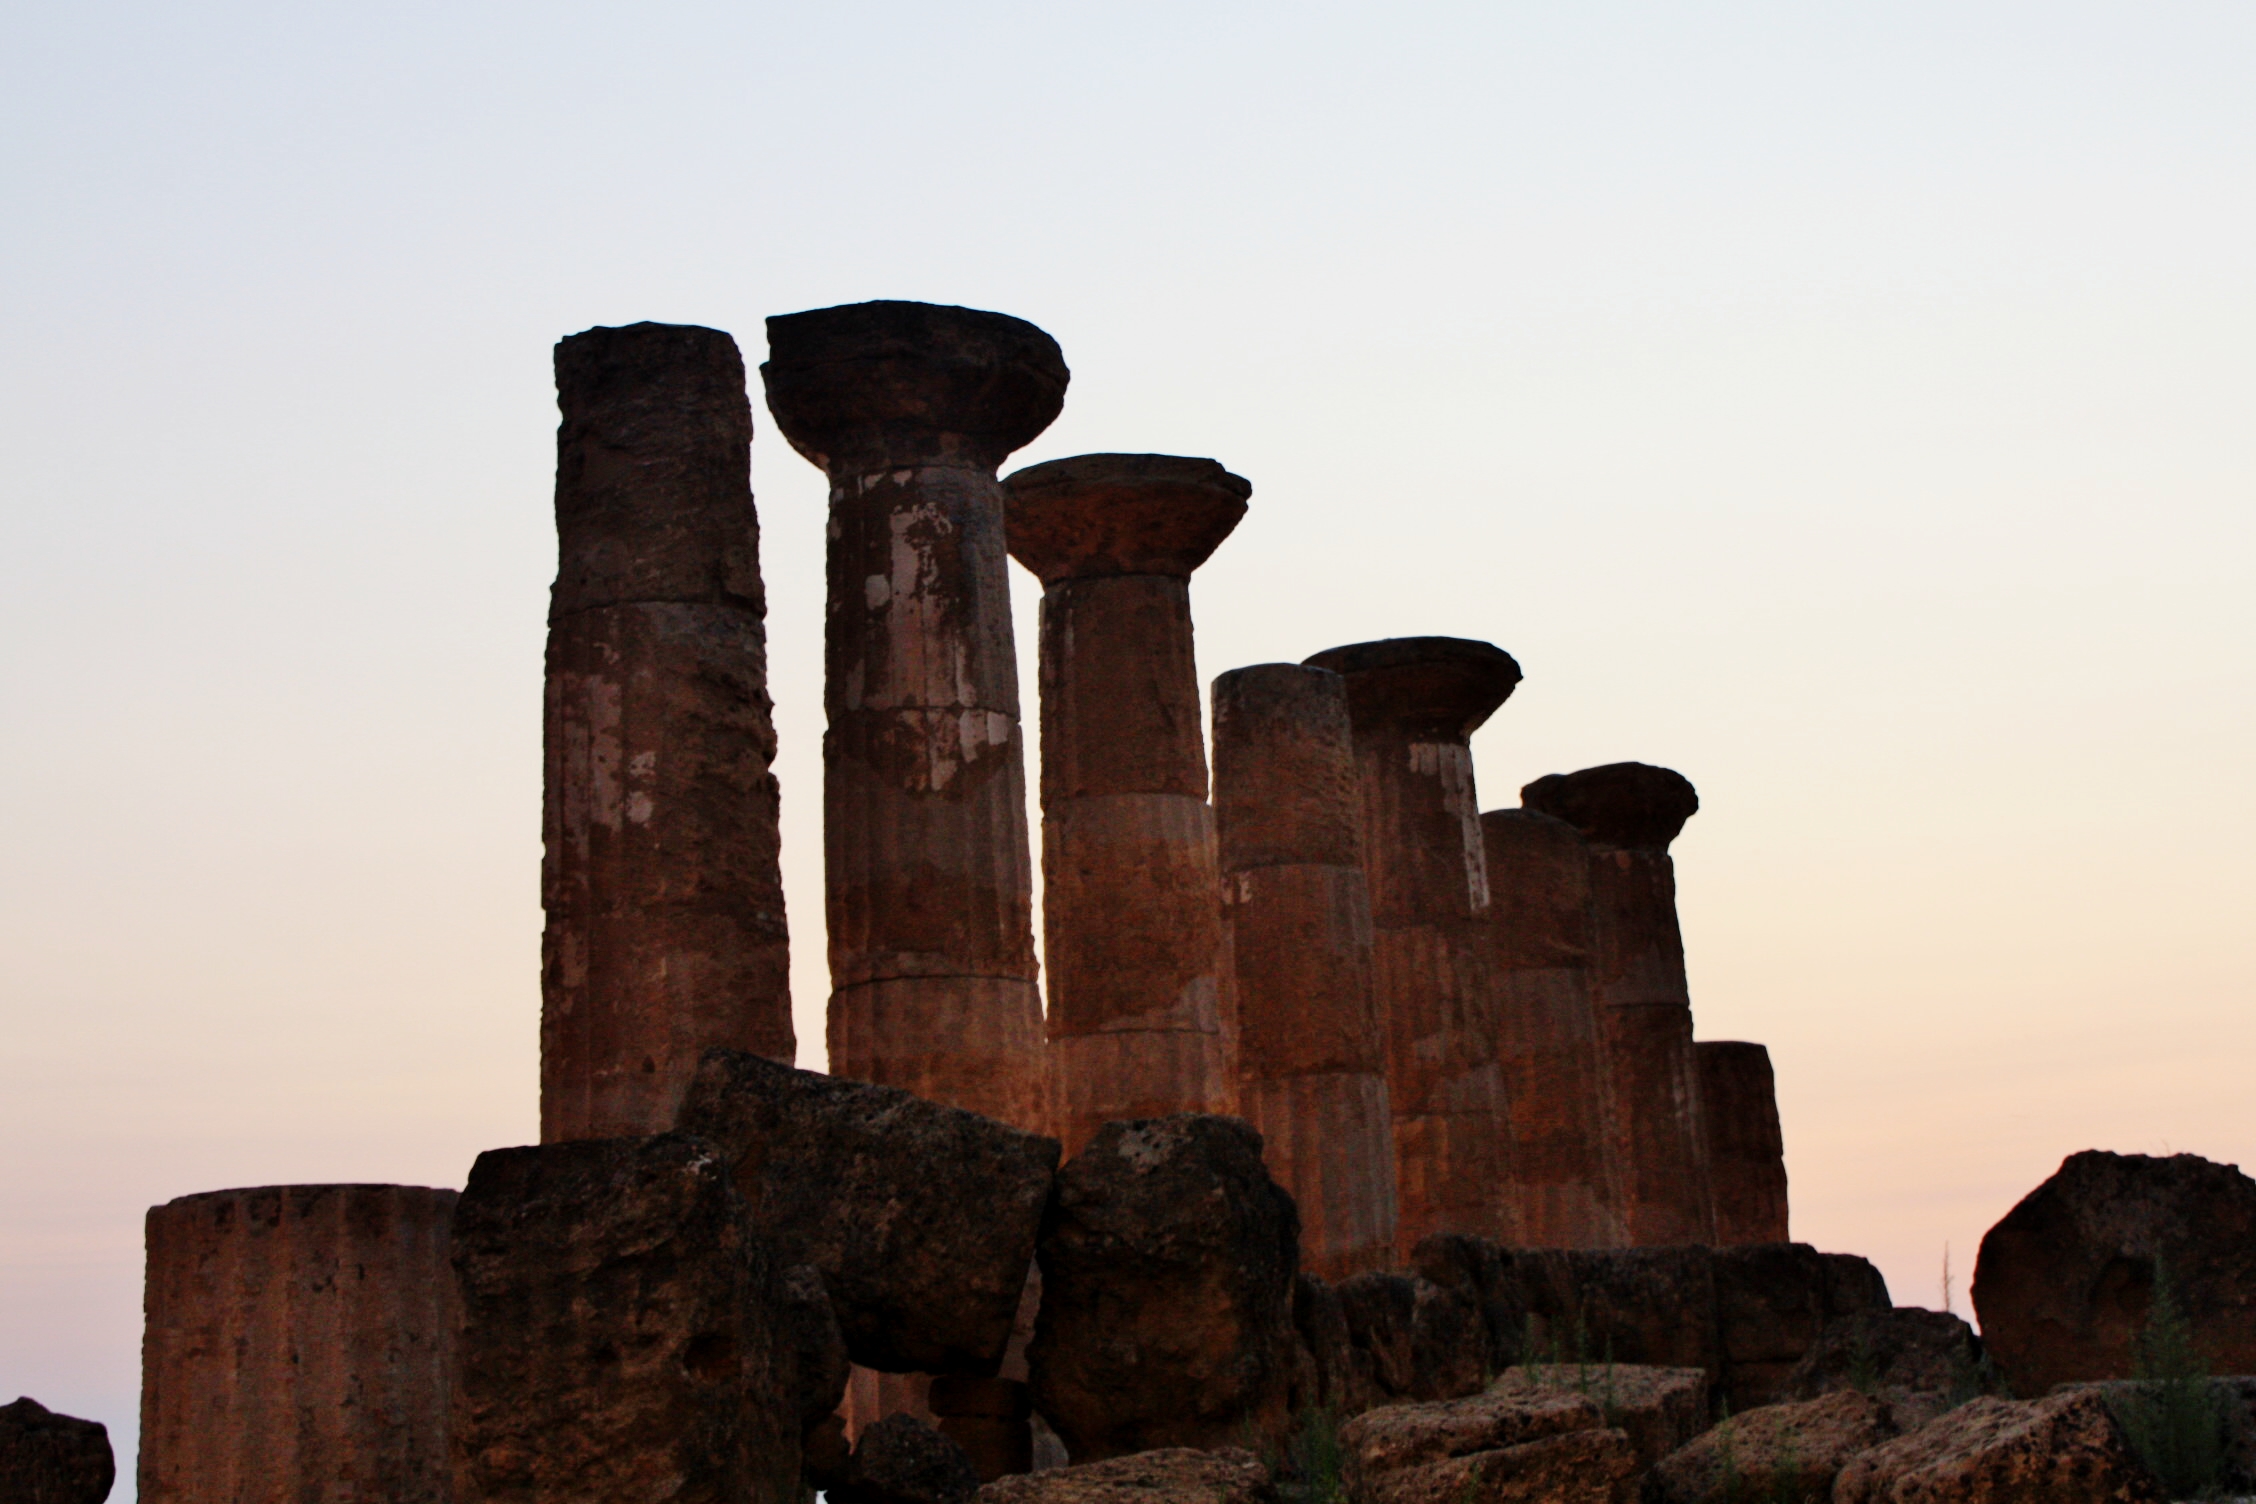 Foto: Valle de los Templos (Templo de Hércules) - Agrigento (Sicily), Italia